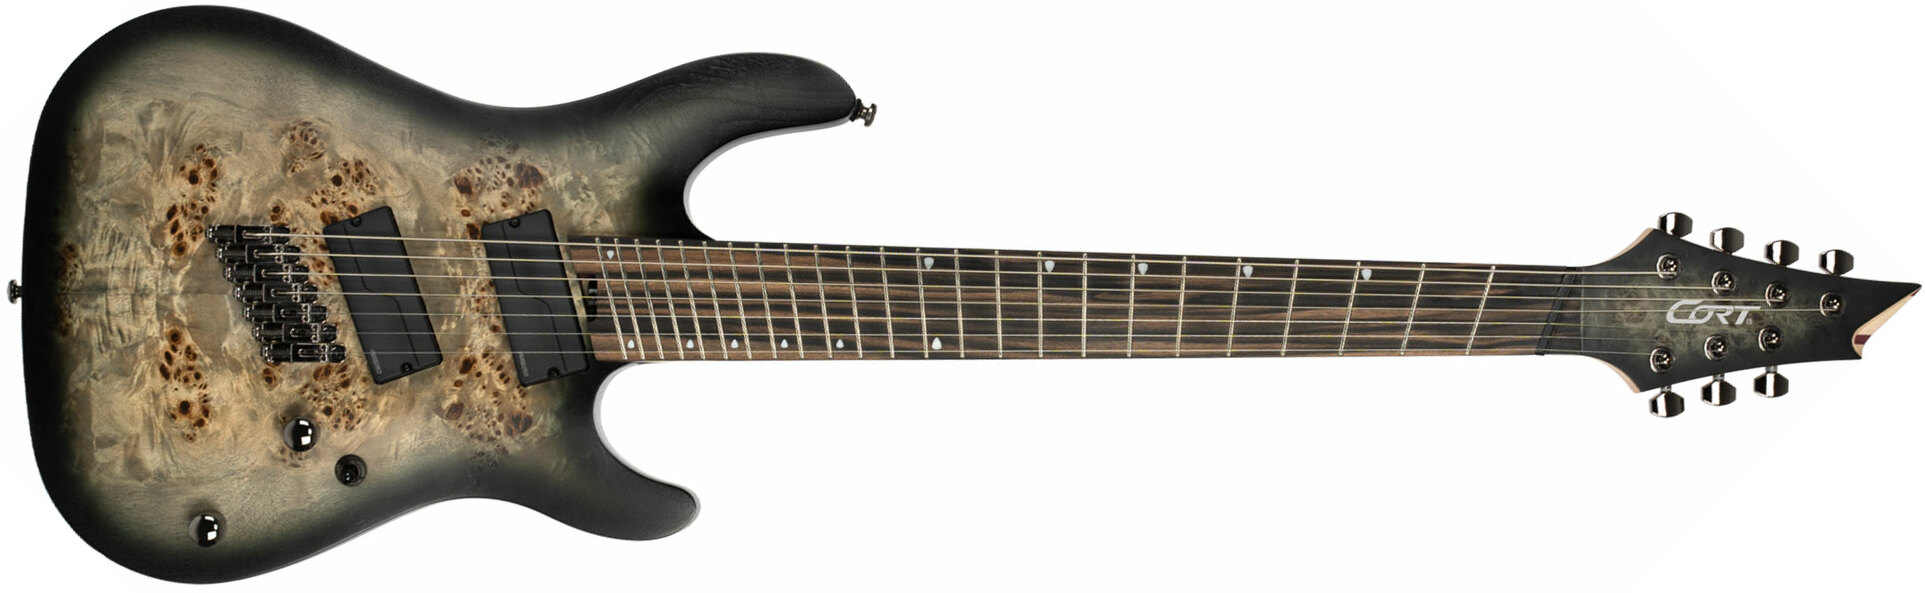 Cort Kx507 Multiscale 7c 2h Fishman Fluence Ht Eb - Star Dust Black - Multi-Scale Guitar - Main picture